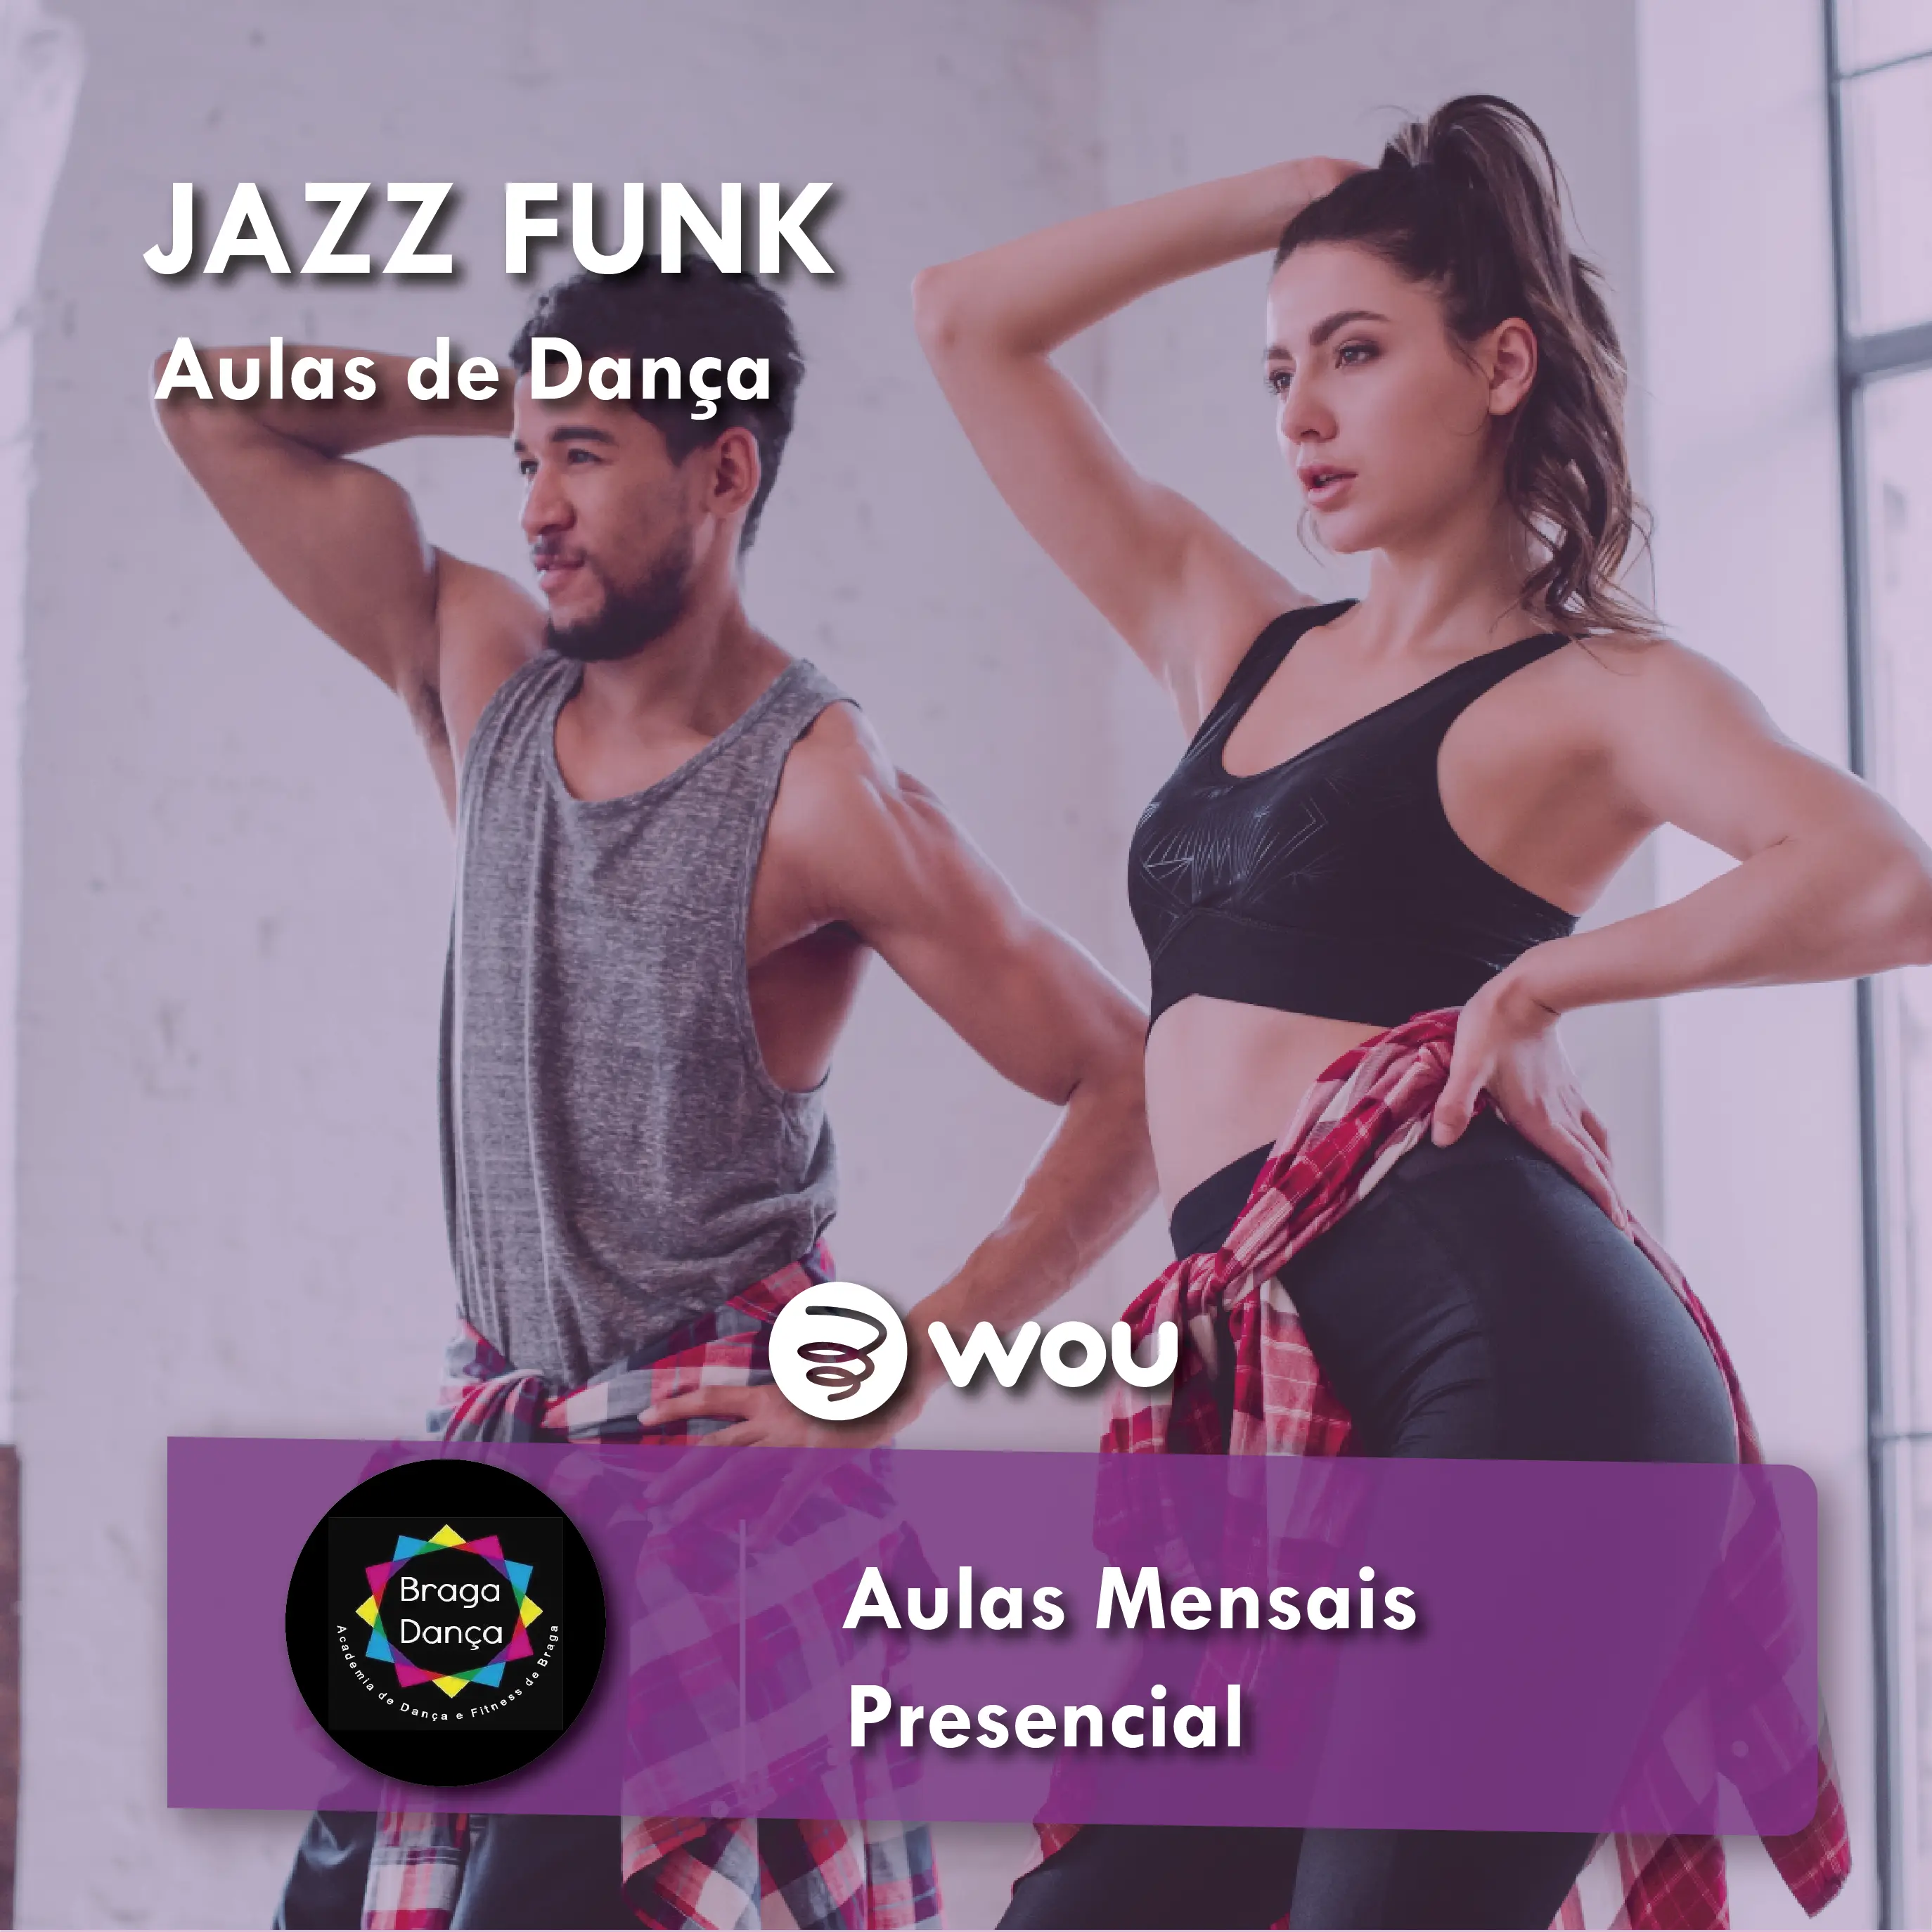 Aulas de Jazz Funk em Braga